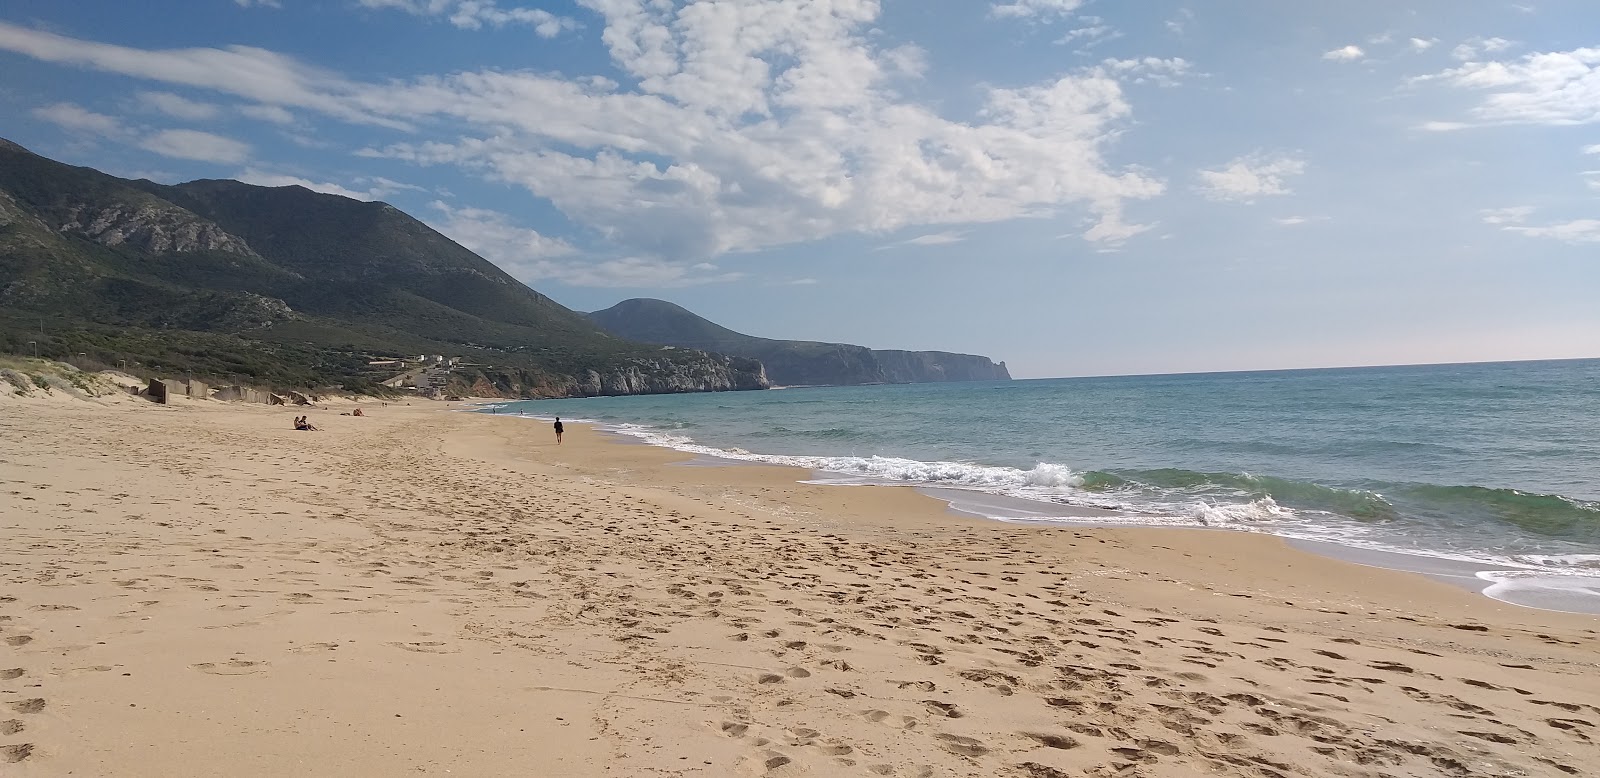 Foto de Playa Piccoli Pini - lugar popular entre los conocedores del relax